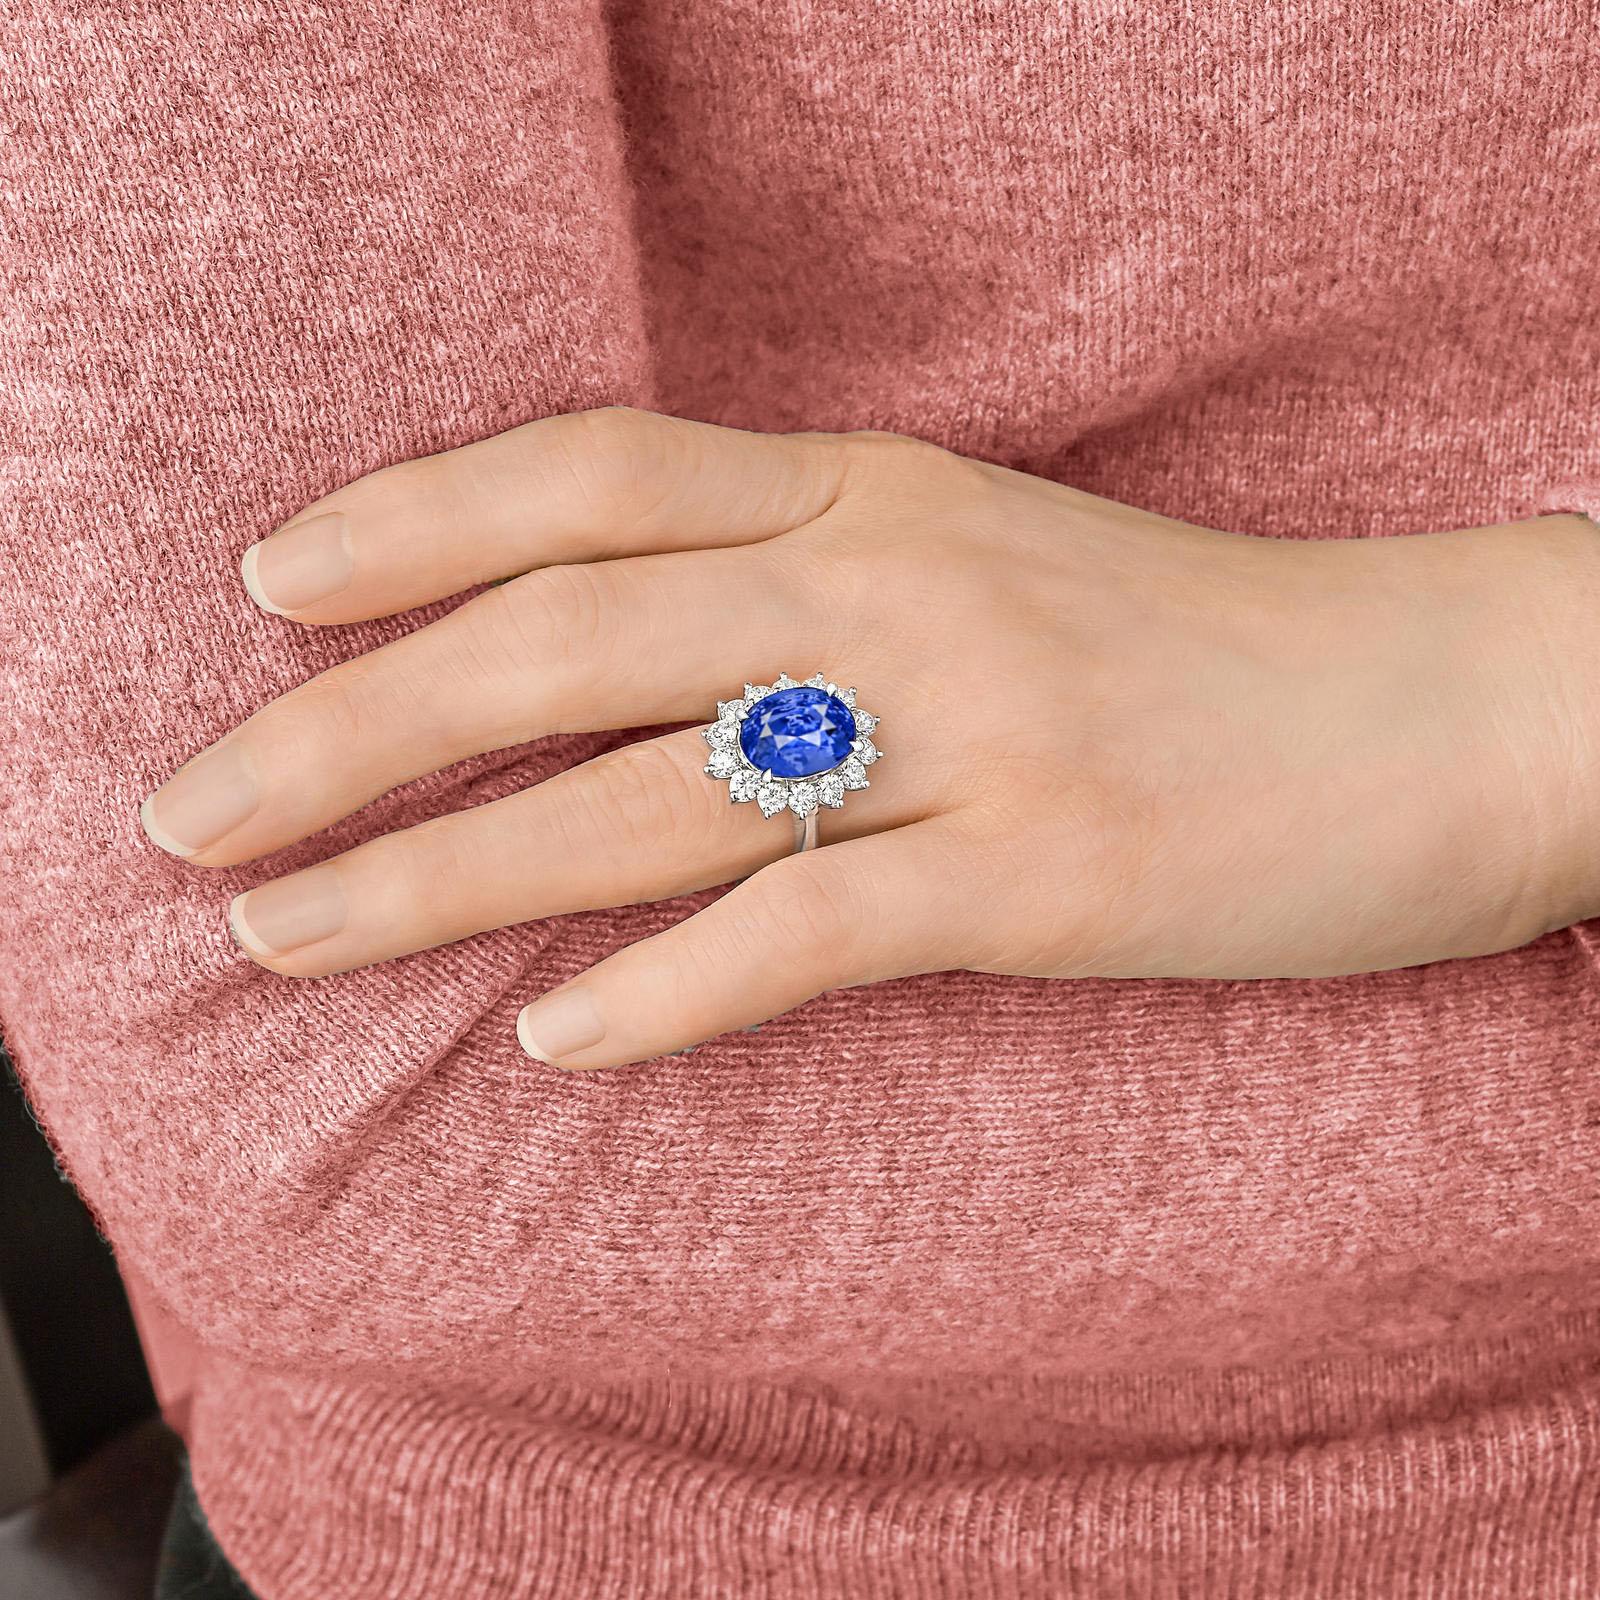 Wir stellen Ihnen ein wirklich außergewöhnliches Schmuckstück vor: den GIA-zertifizierten 5-Karat-Ring mit intensivem BURMESE Blue No Heat Sapphire Diamond.

Tauchen Sie ein in die fesselnde Anziehungskraft dieses exquisiten Rings mit einem